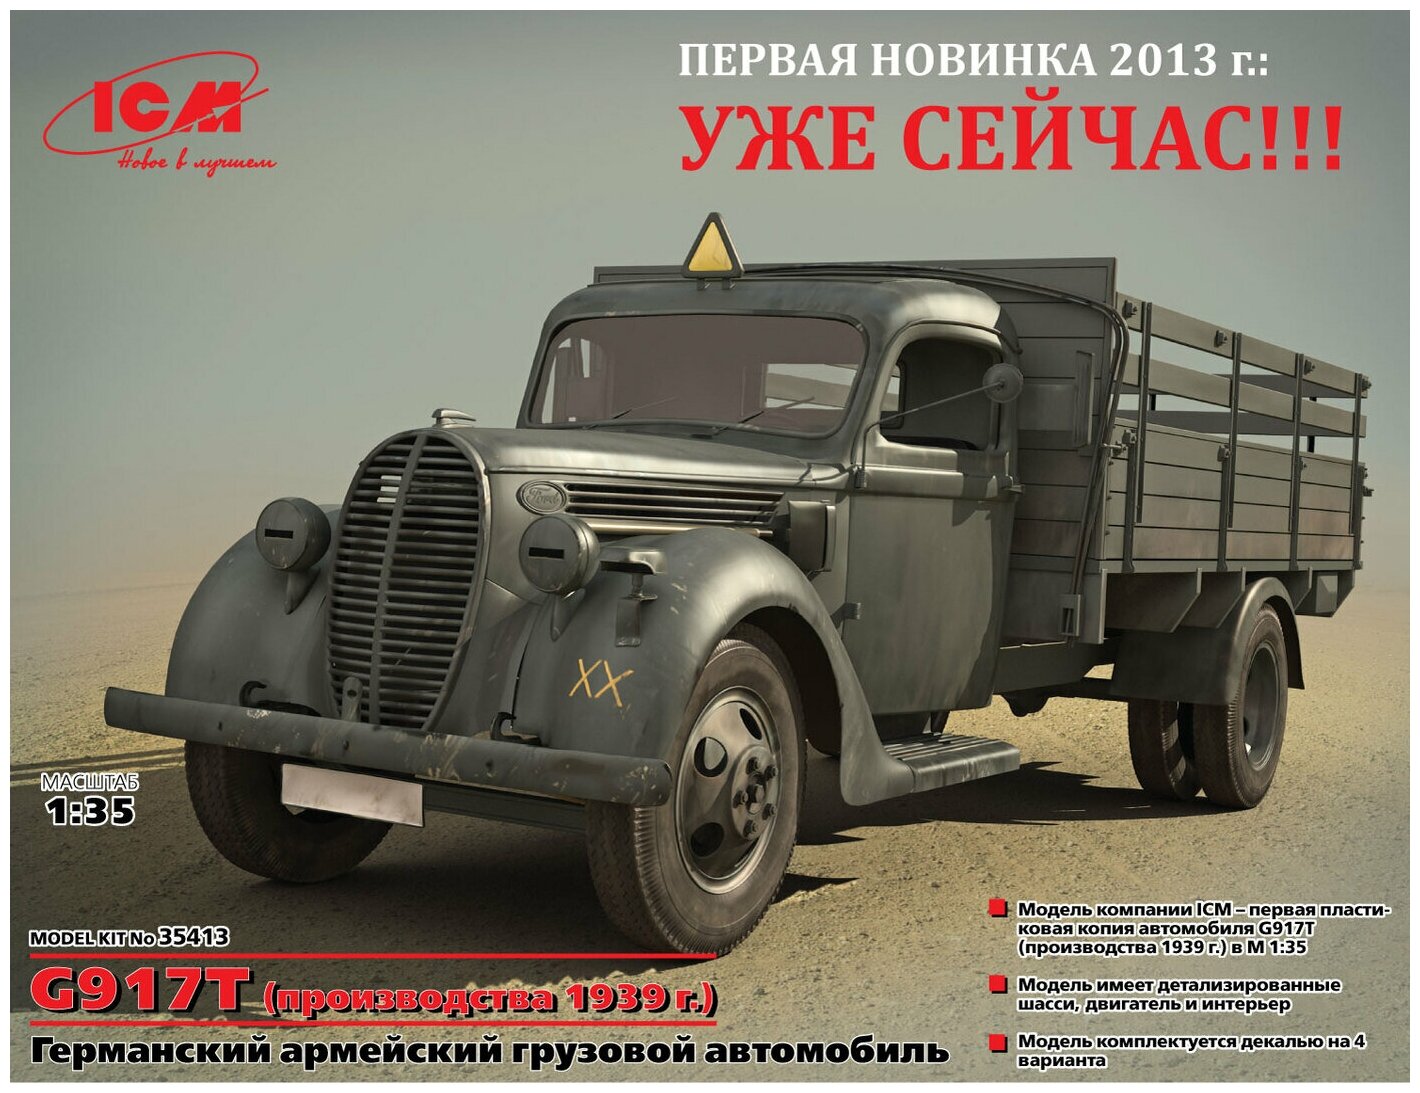 ICM Сборная модель G917T (производства 1939 г.), Германский армейский грузовой автомобиль, 1/35